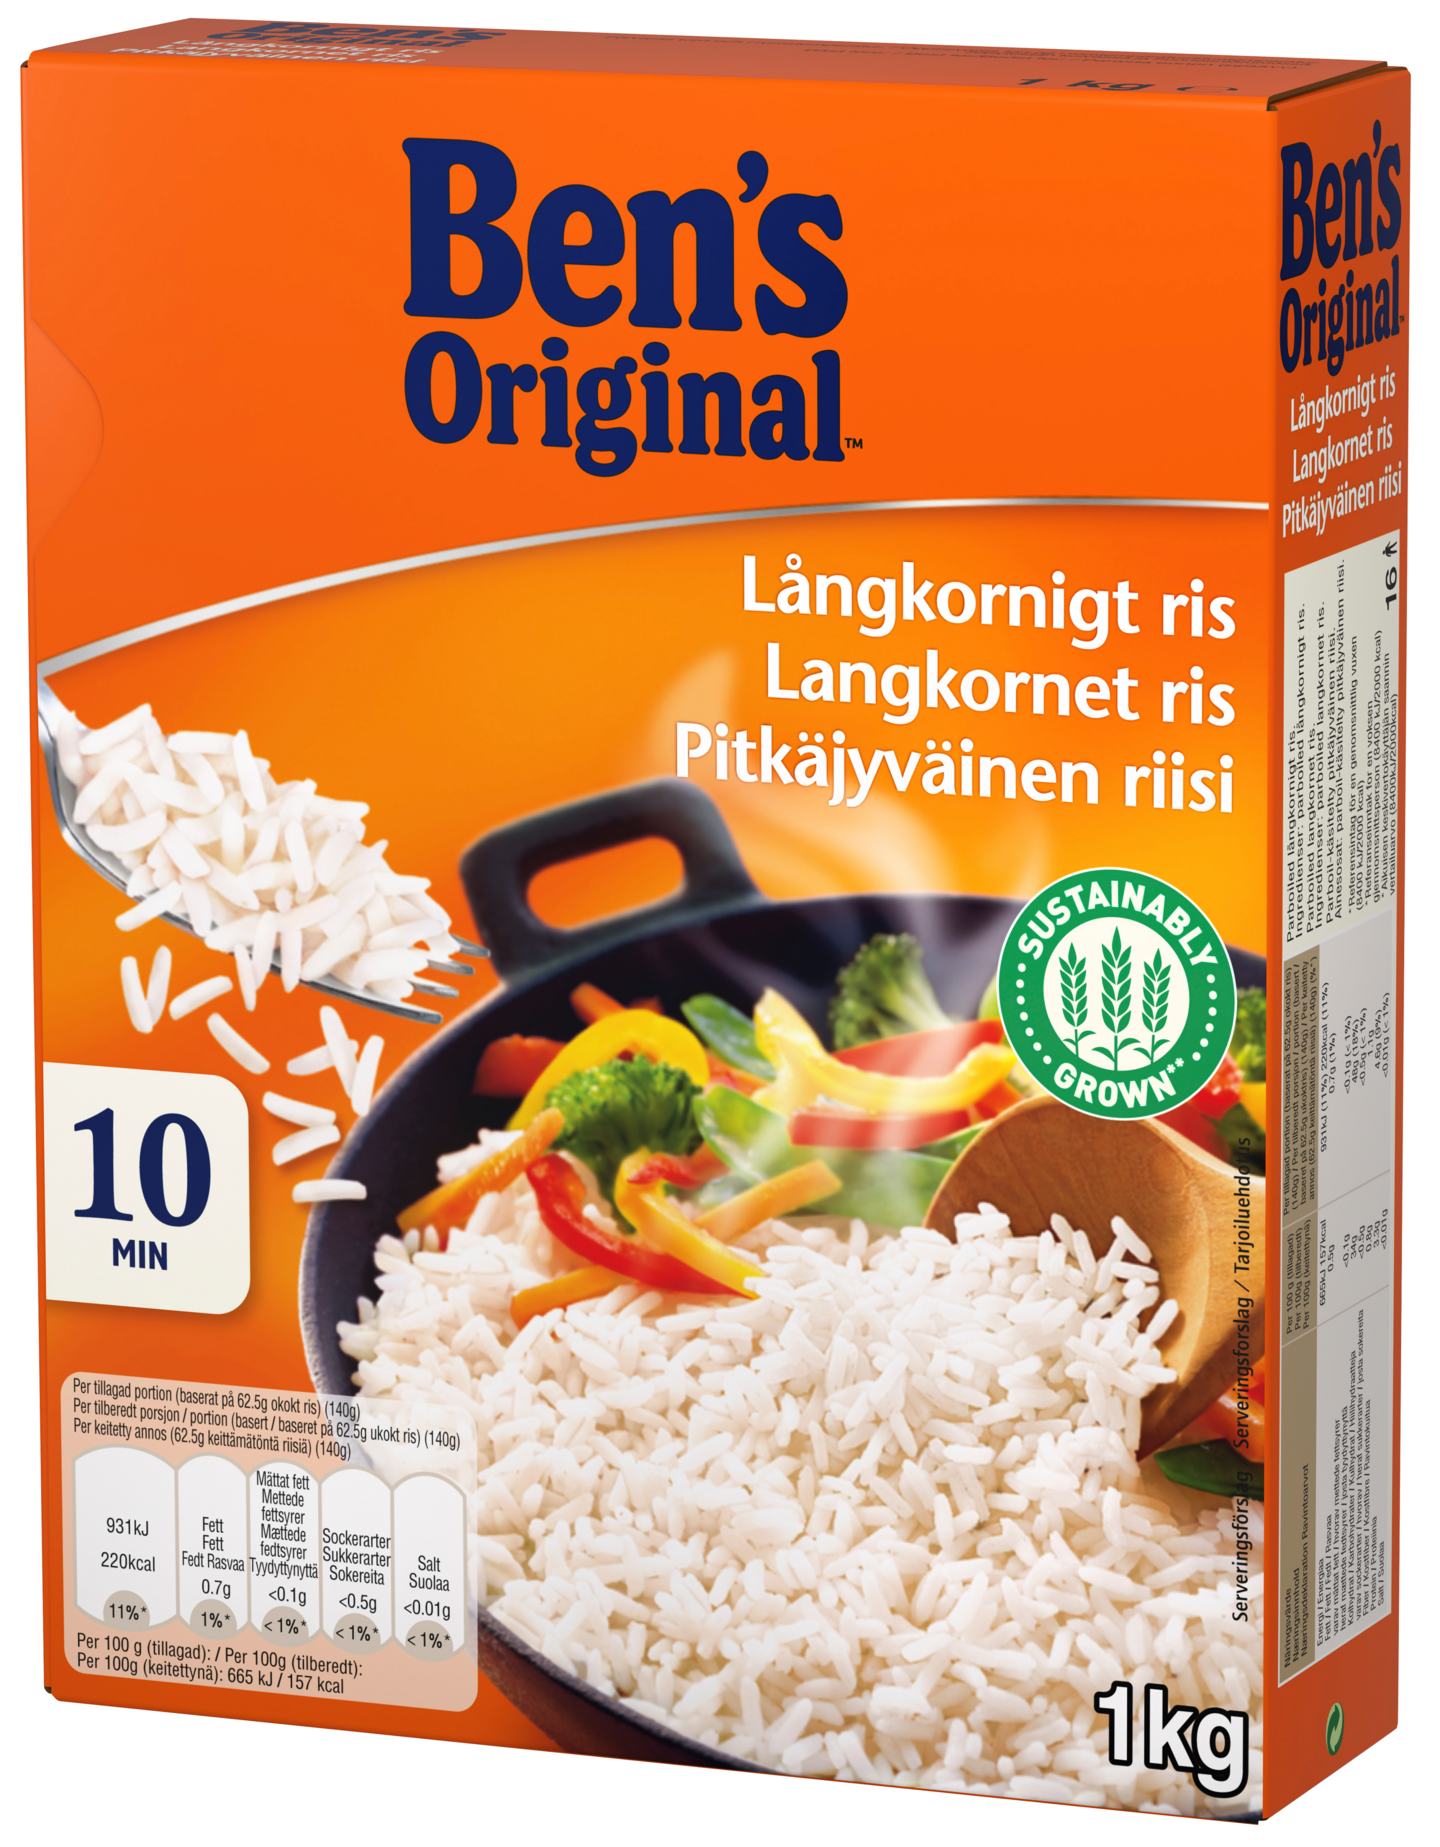 Ben's Original Pitkäjyväinen riisi 1kg PUOLILAVA